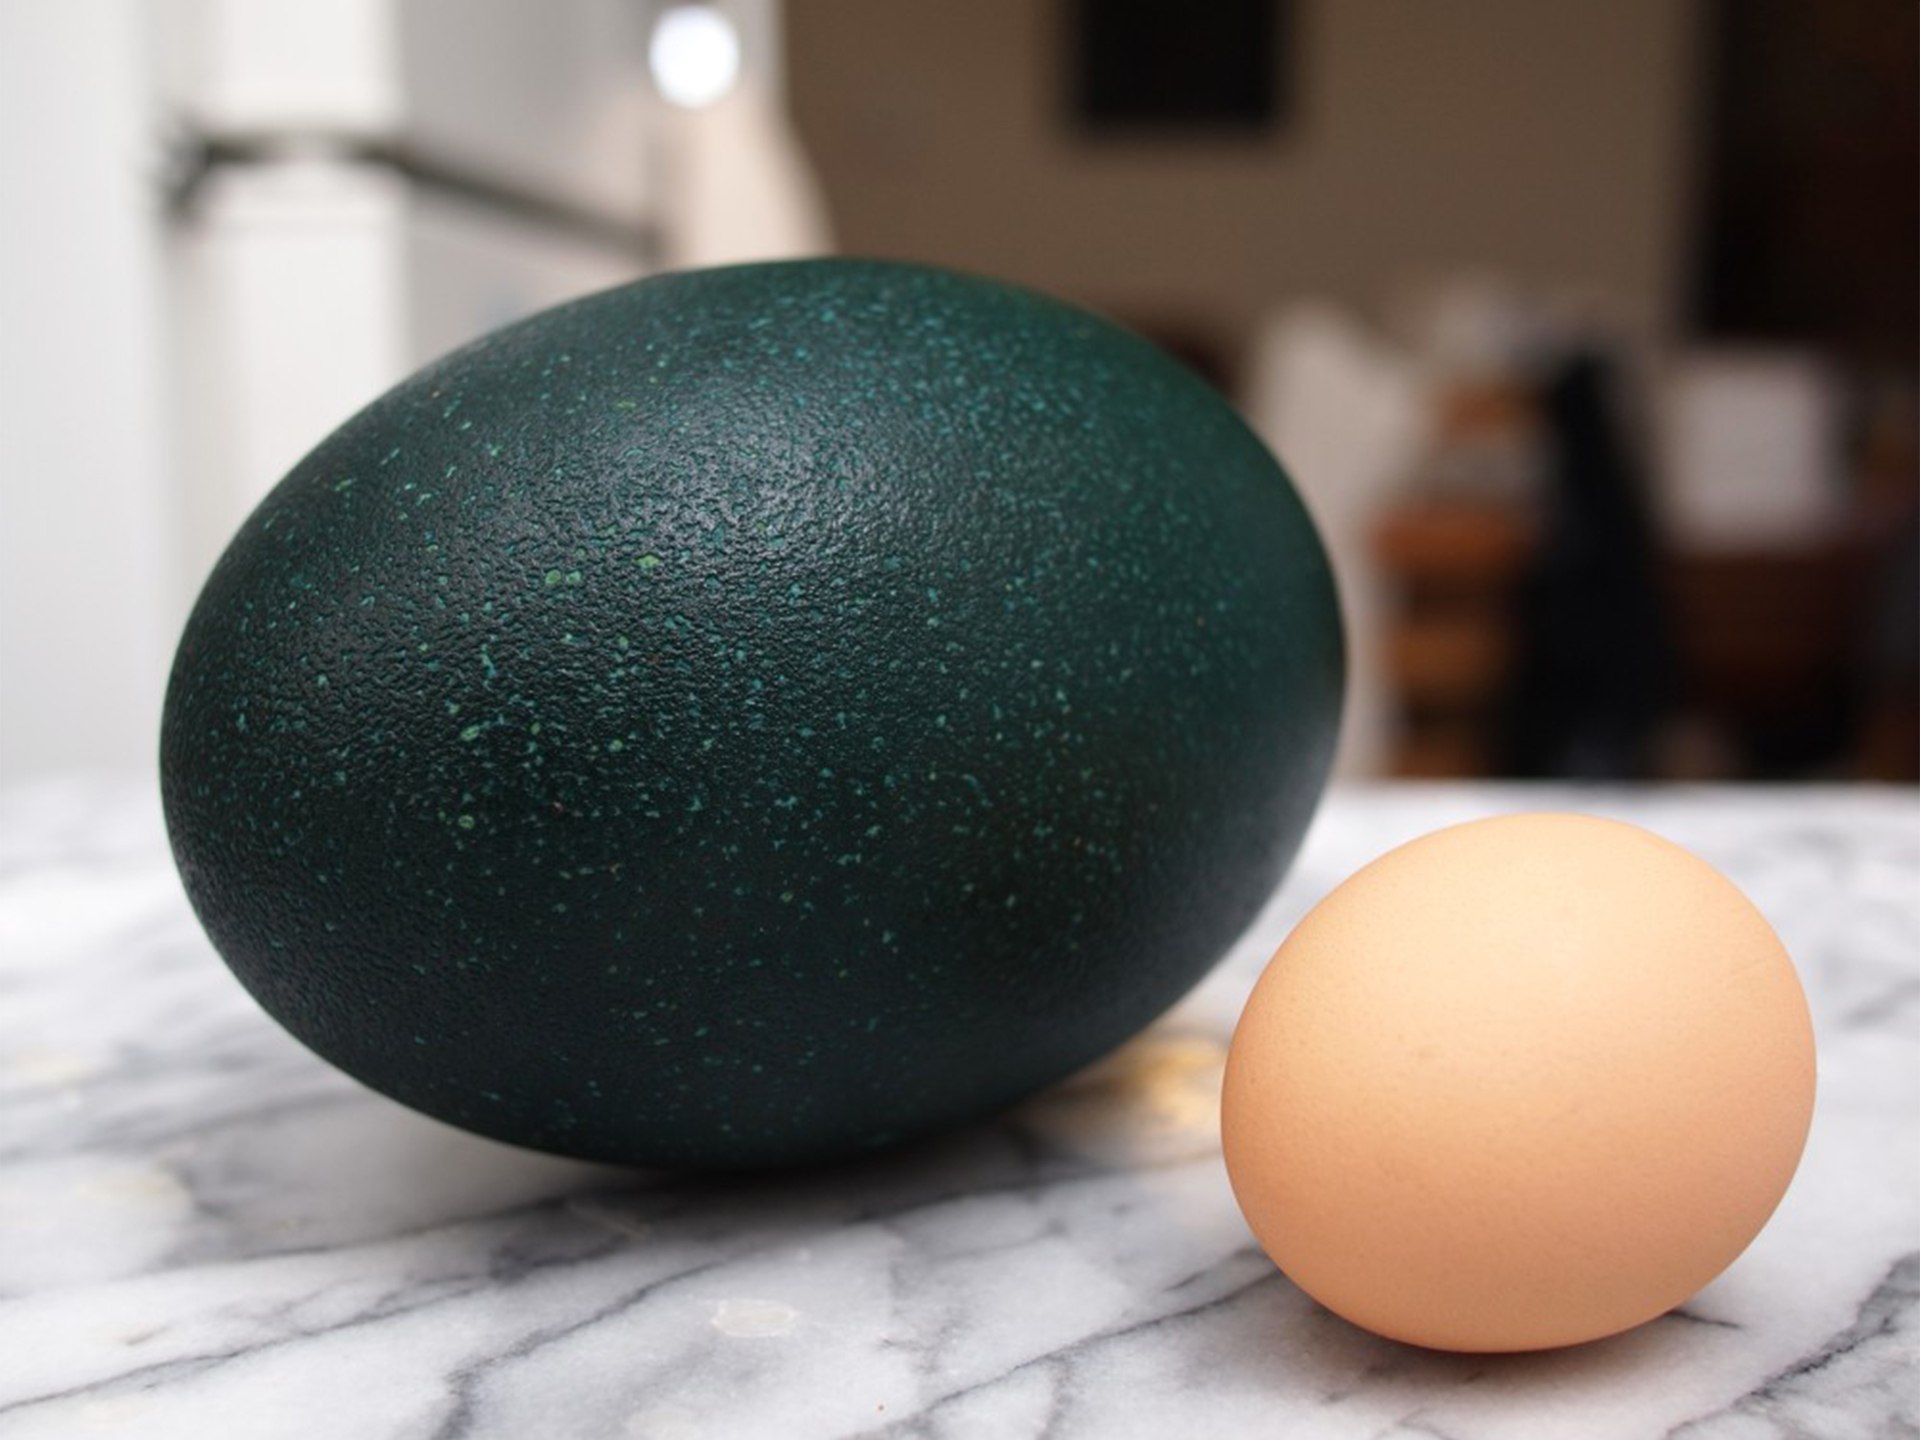 Громадное яйцо. Страусиное яйцо эму. Яйца казуара. Эму и яйца эму. У эму зеленые яйца.